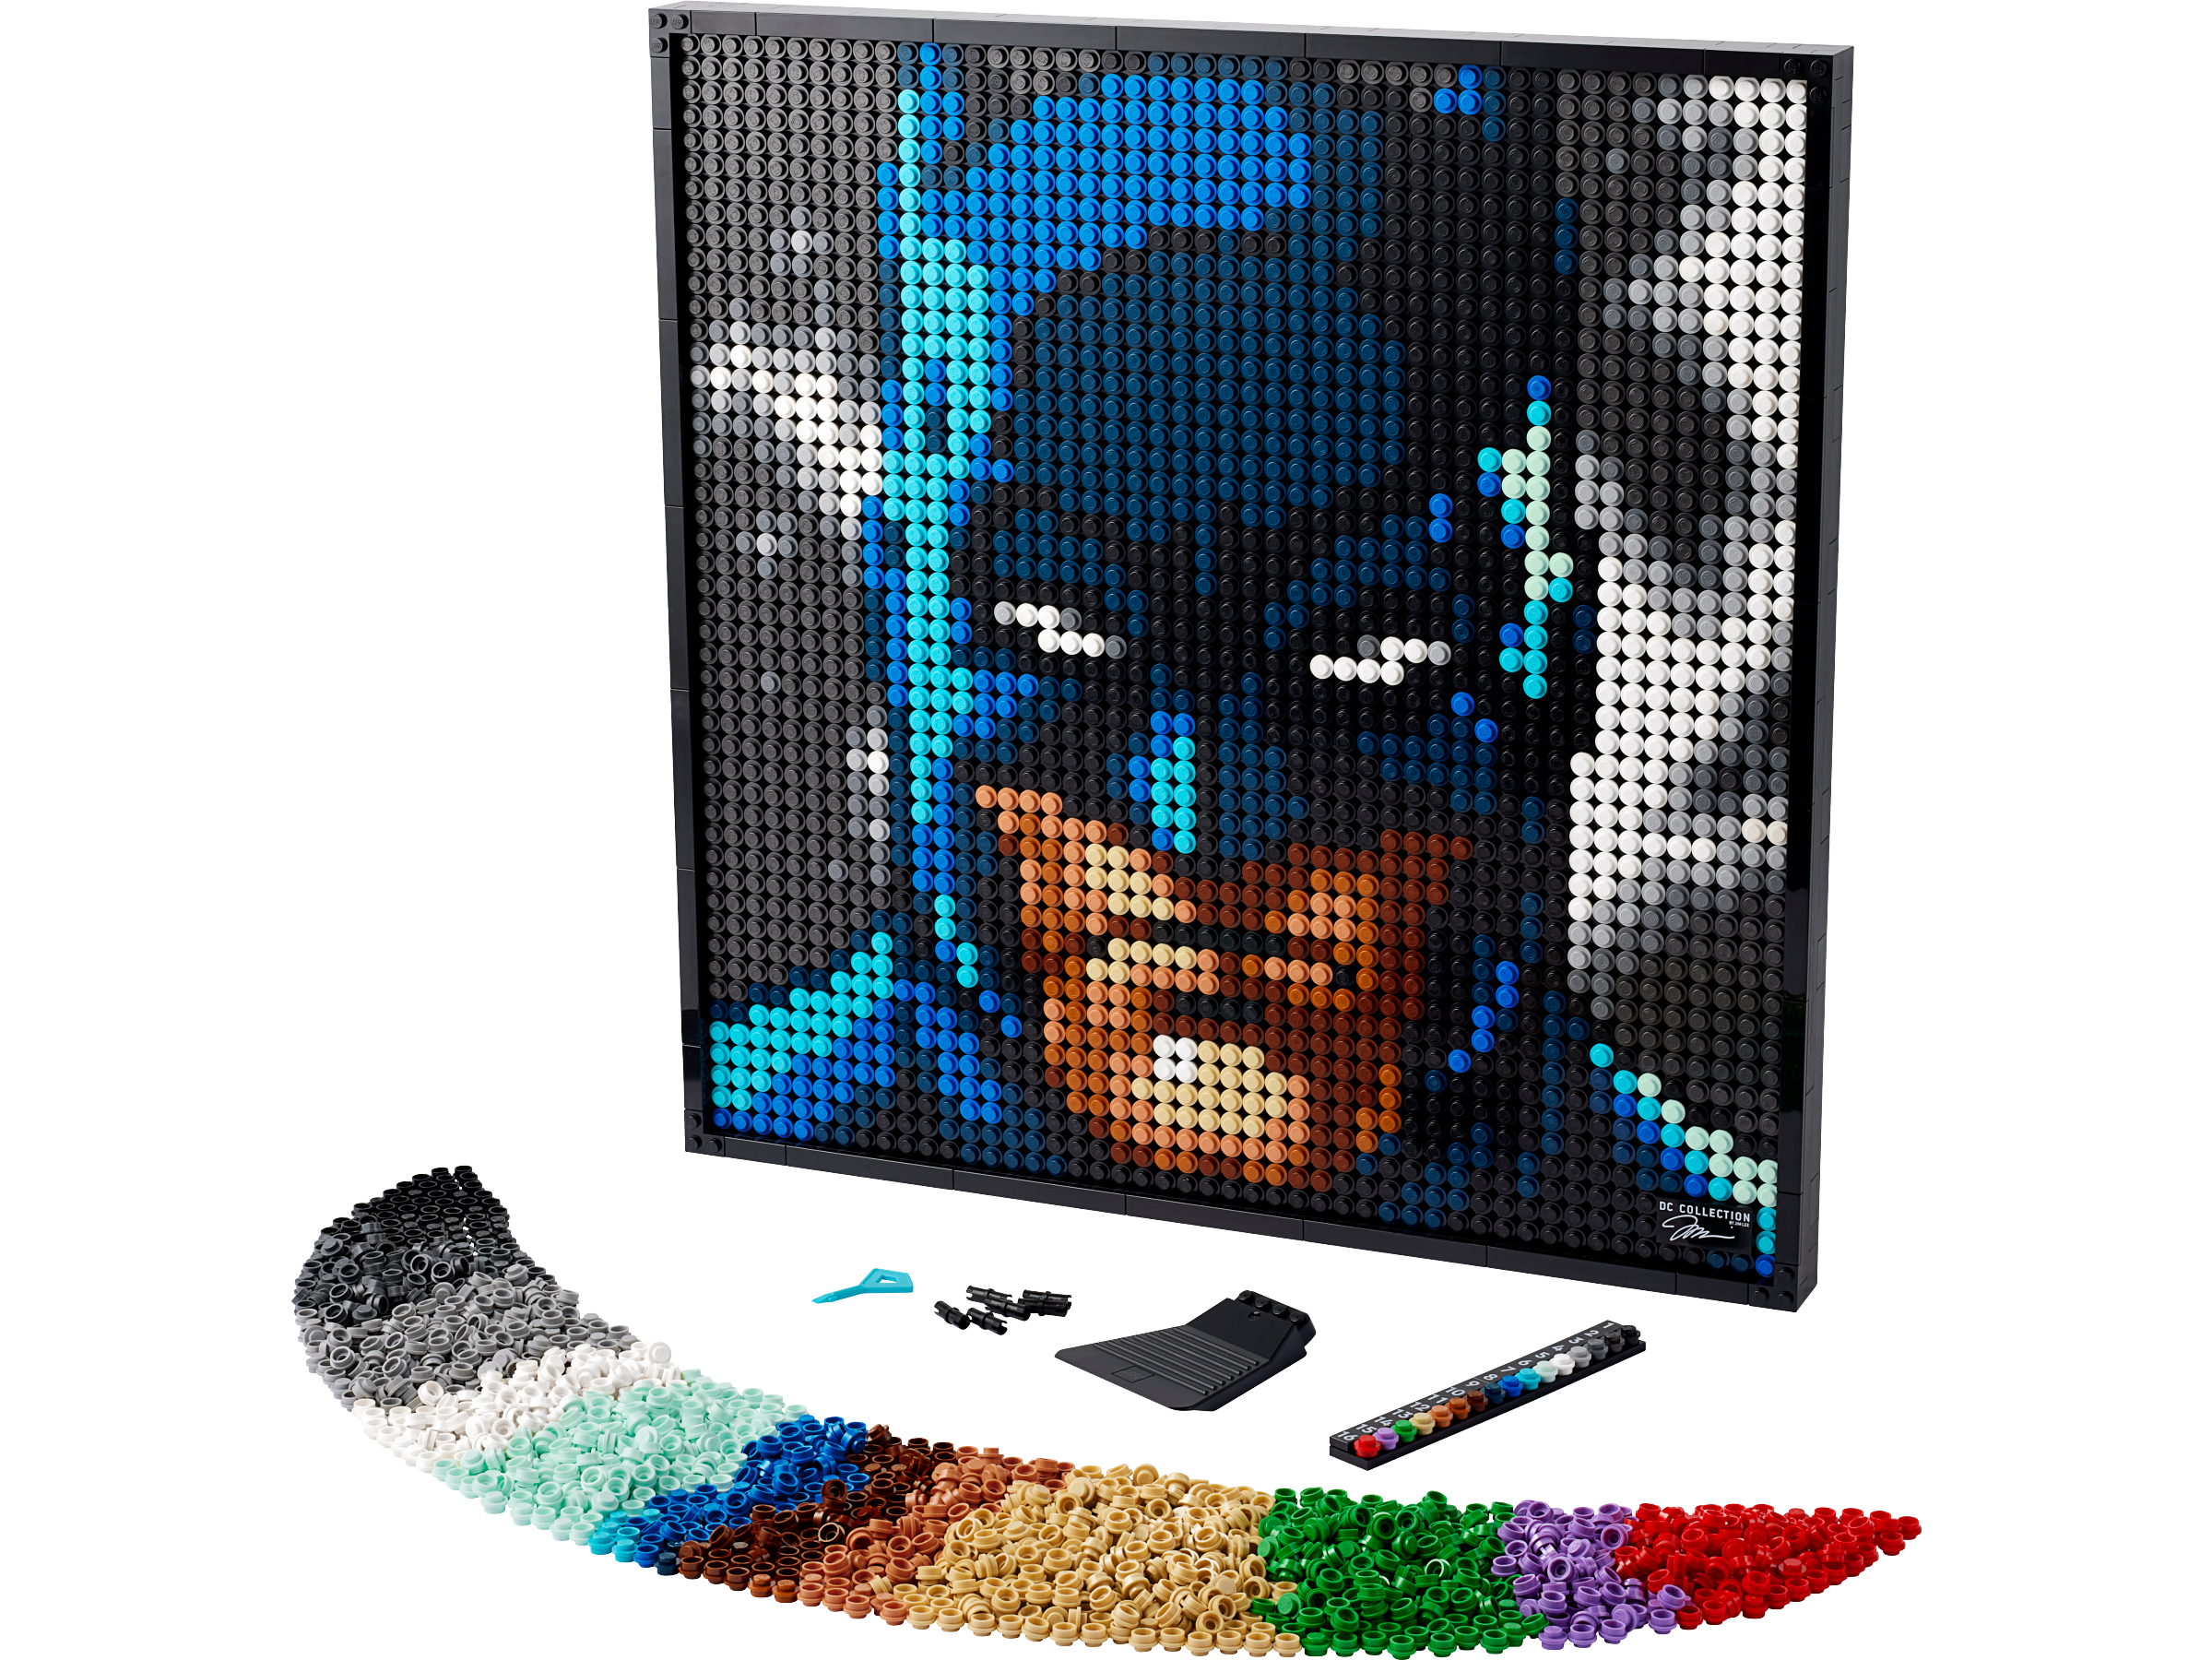 31205 Jim Lee Batman" Samling LEGO sæt, tilbud og